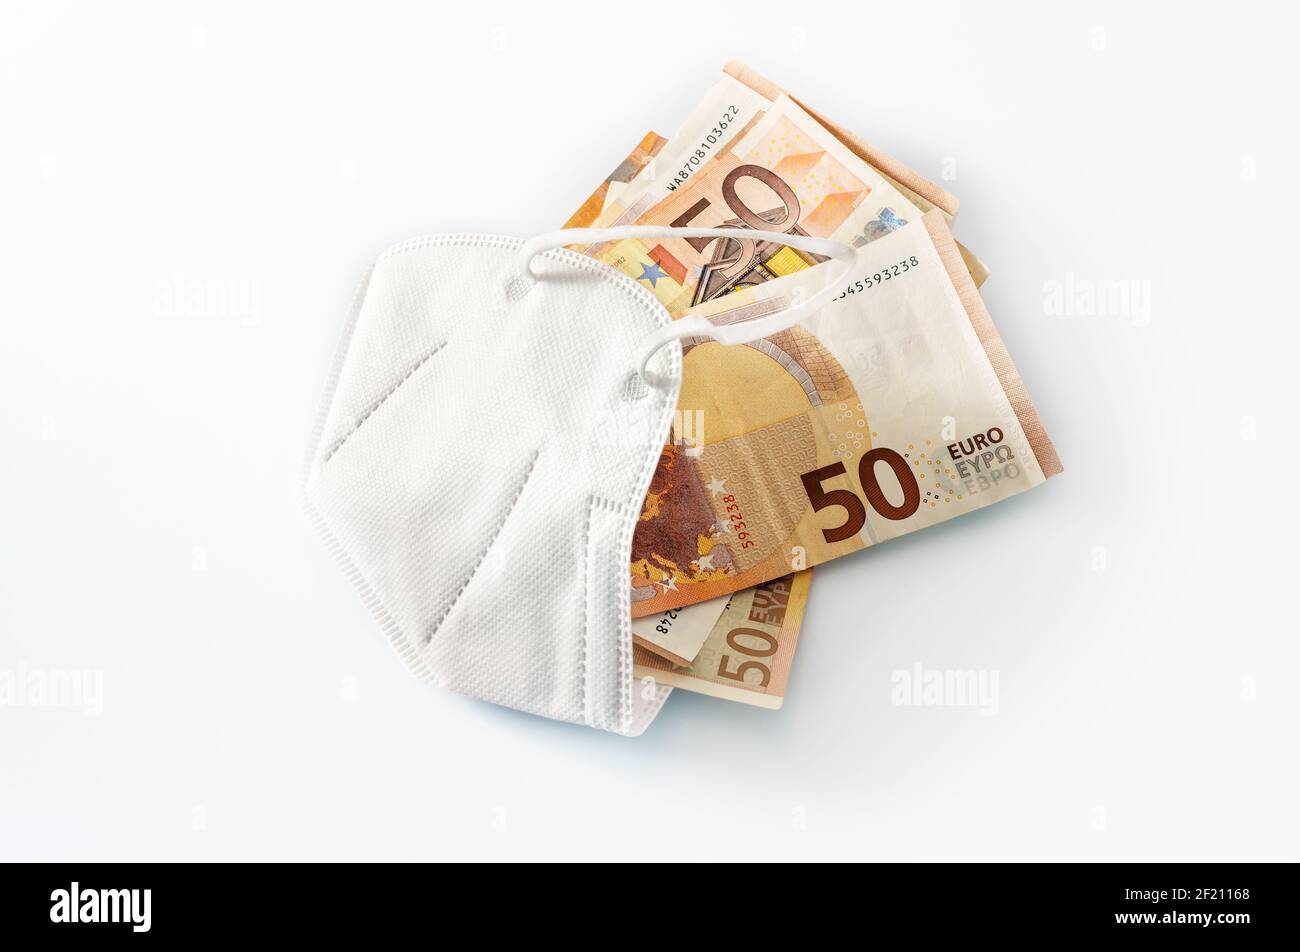 ffp2 maschera medica di protezione contro il coronavirus riempito di banconote in euro, concetto di aumento dei costi nell'assistenza sanitaria o di arricchimento per corruzione, Foto Stock